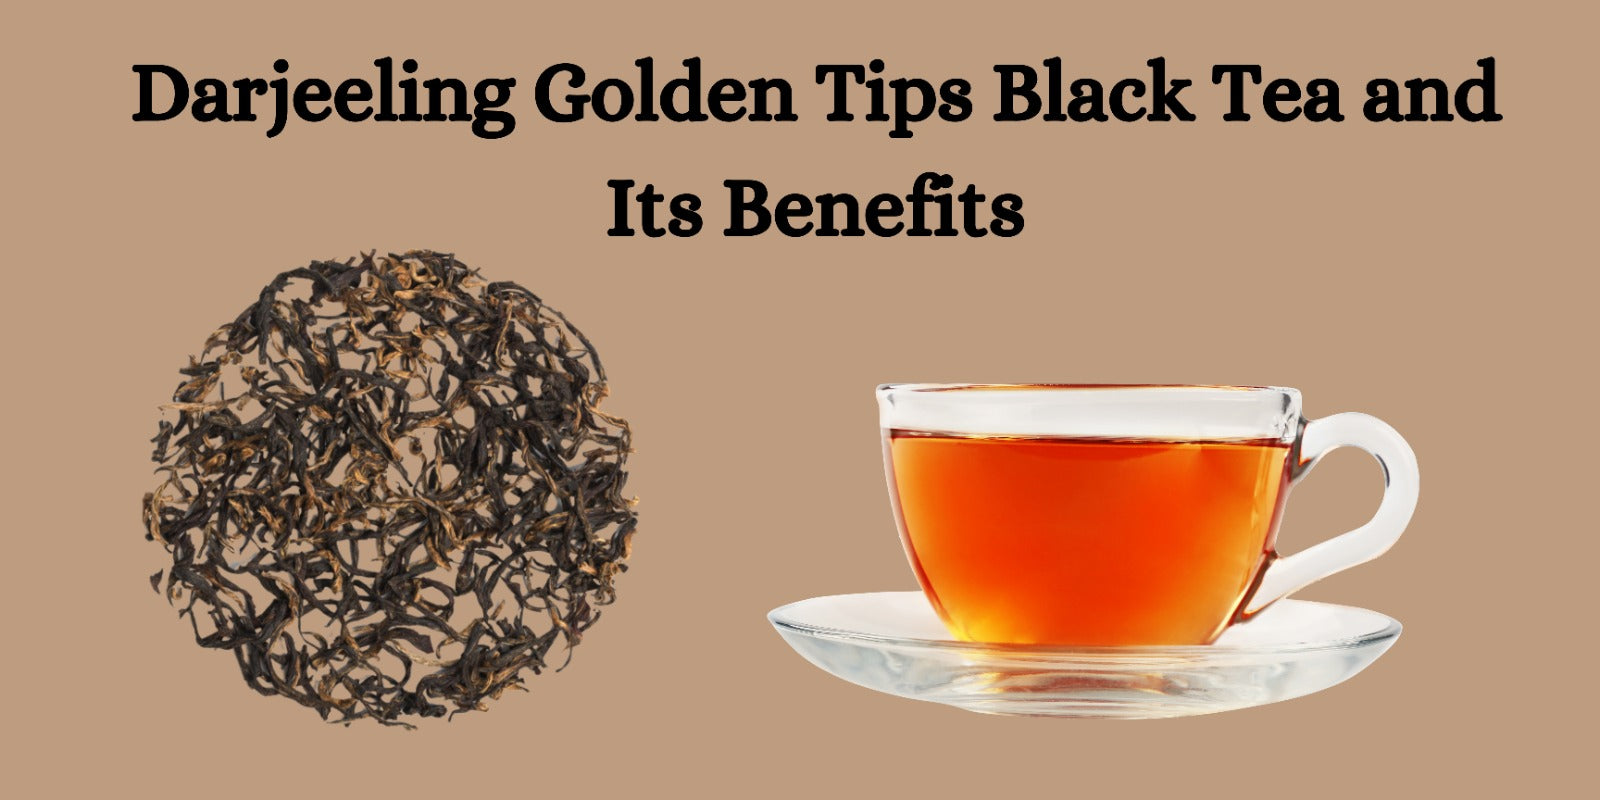 Darjeeling Golden Tips Black Tea and Its Benefits